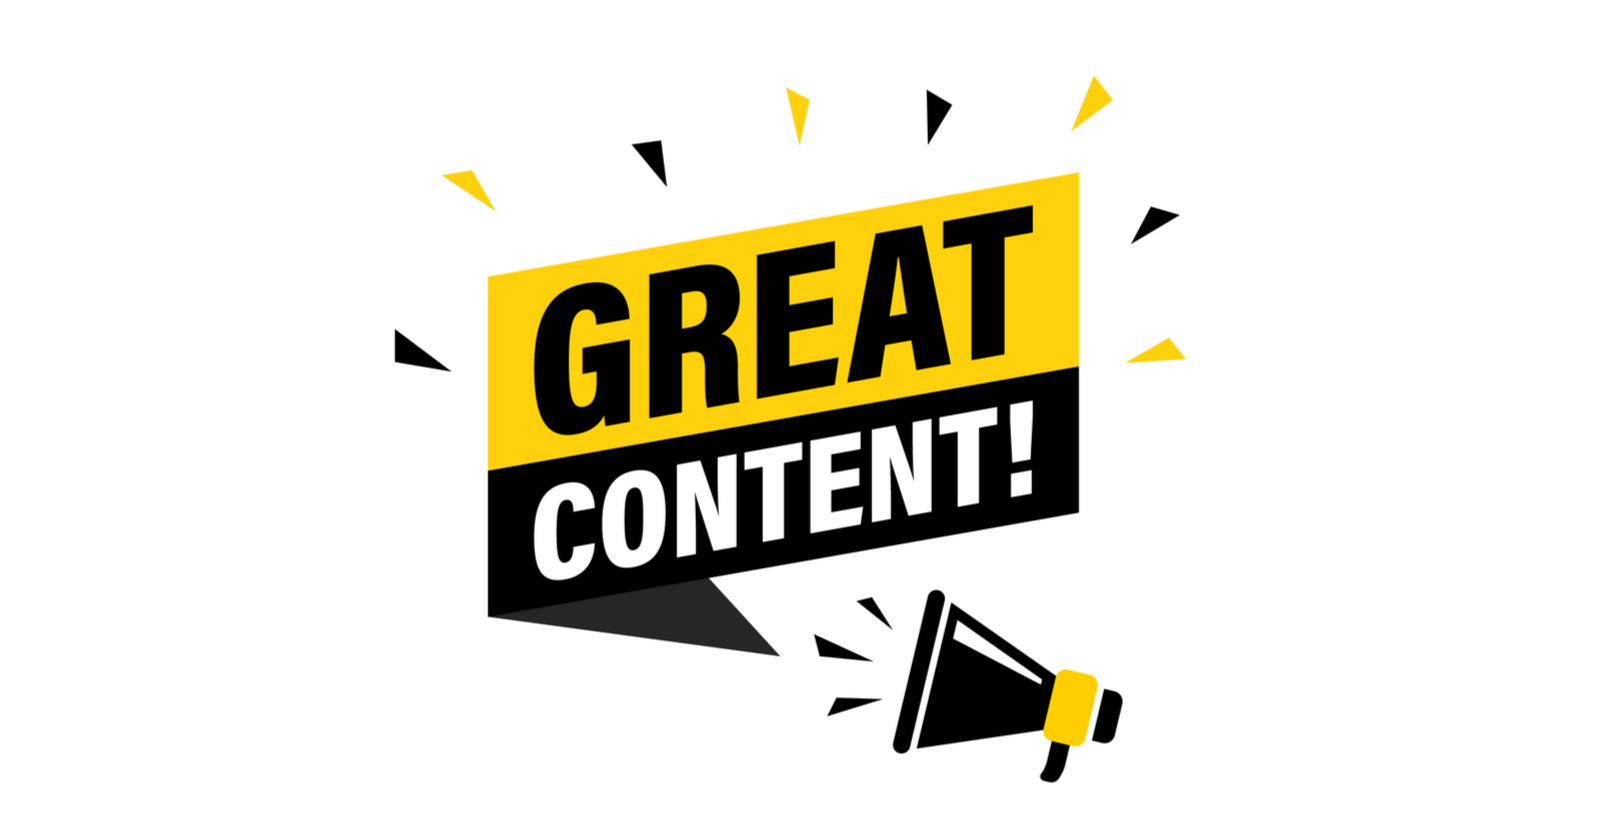 Content là gì? Các tiêu chí của một Content “tuyệt vời”